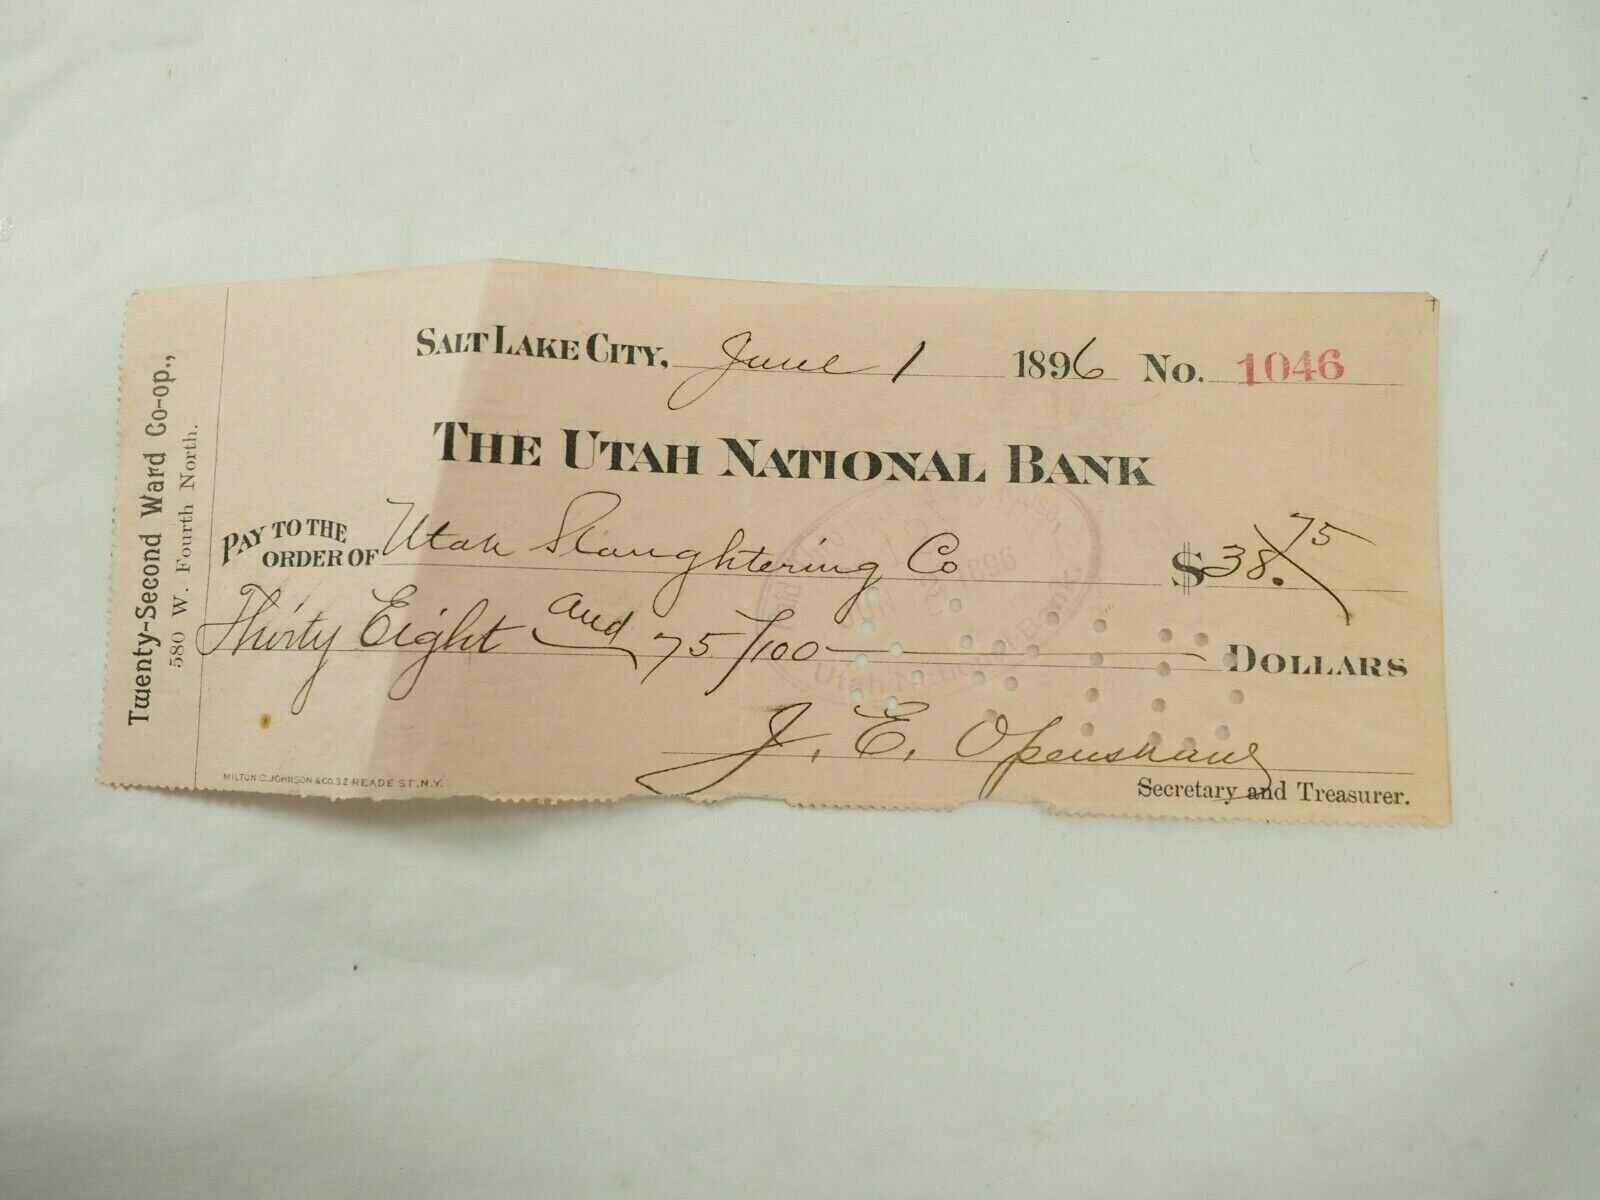 22nd Ward Co-Op to Utah Slaughtering Co.Utah National Bank June 1,1896